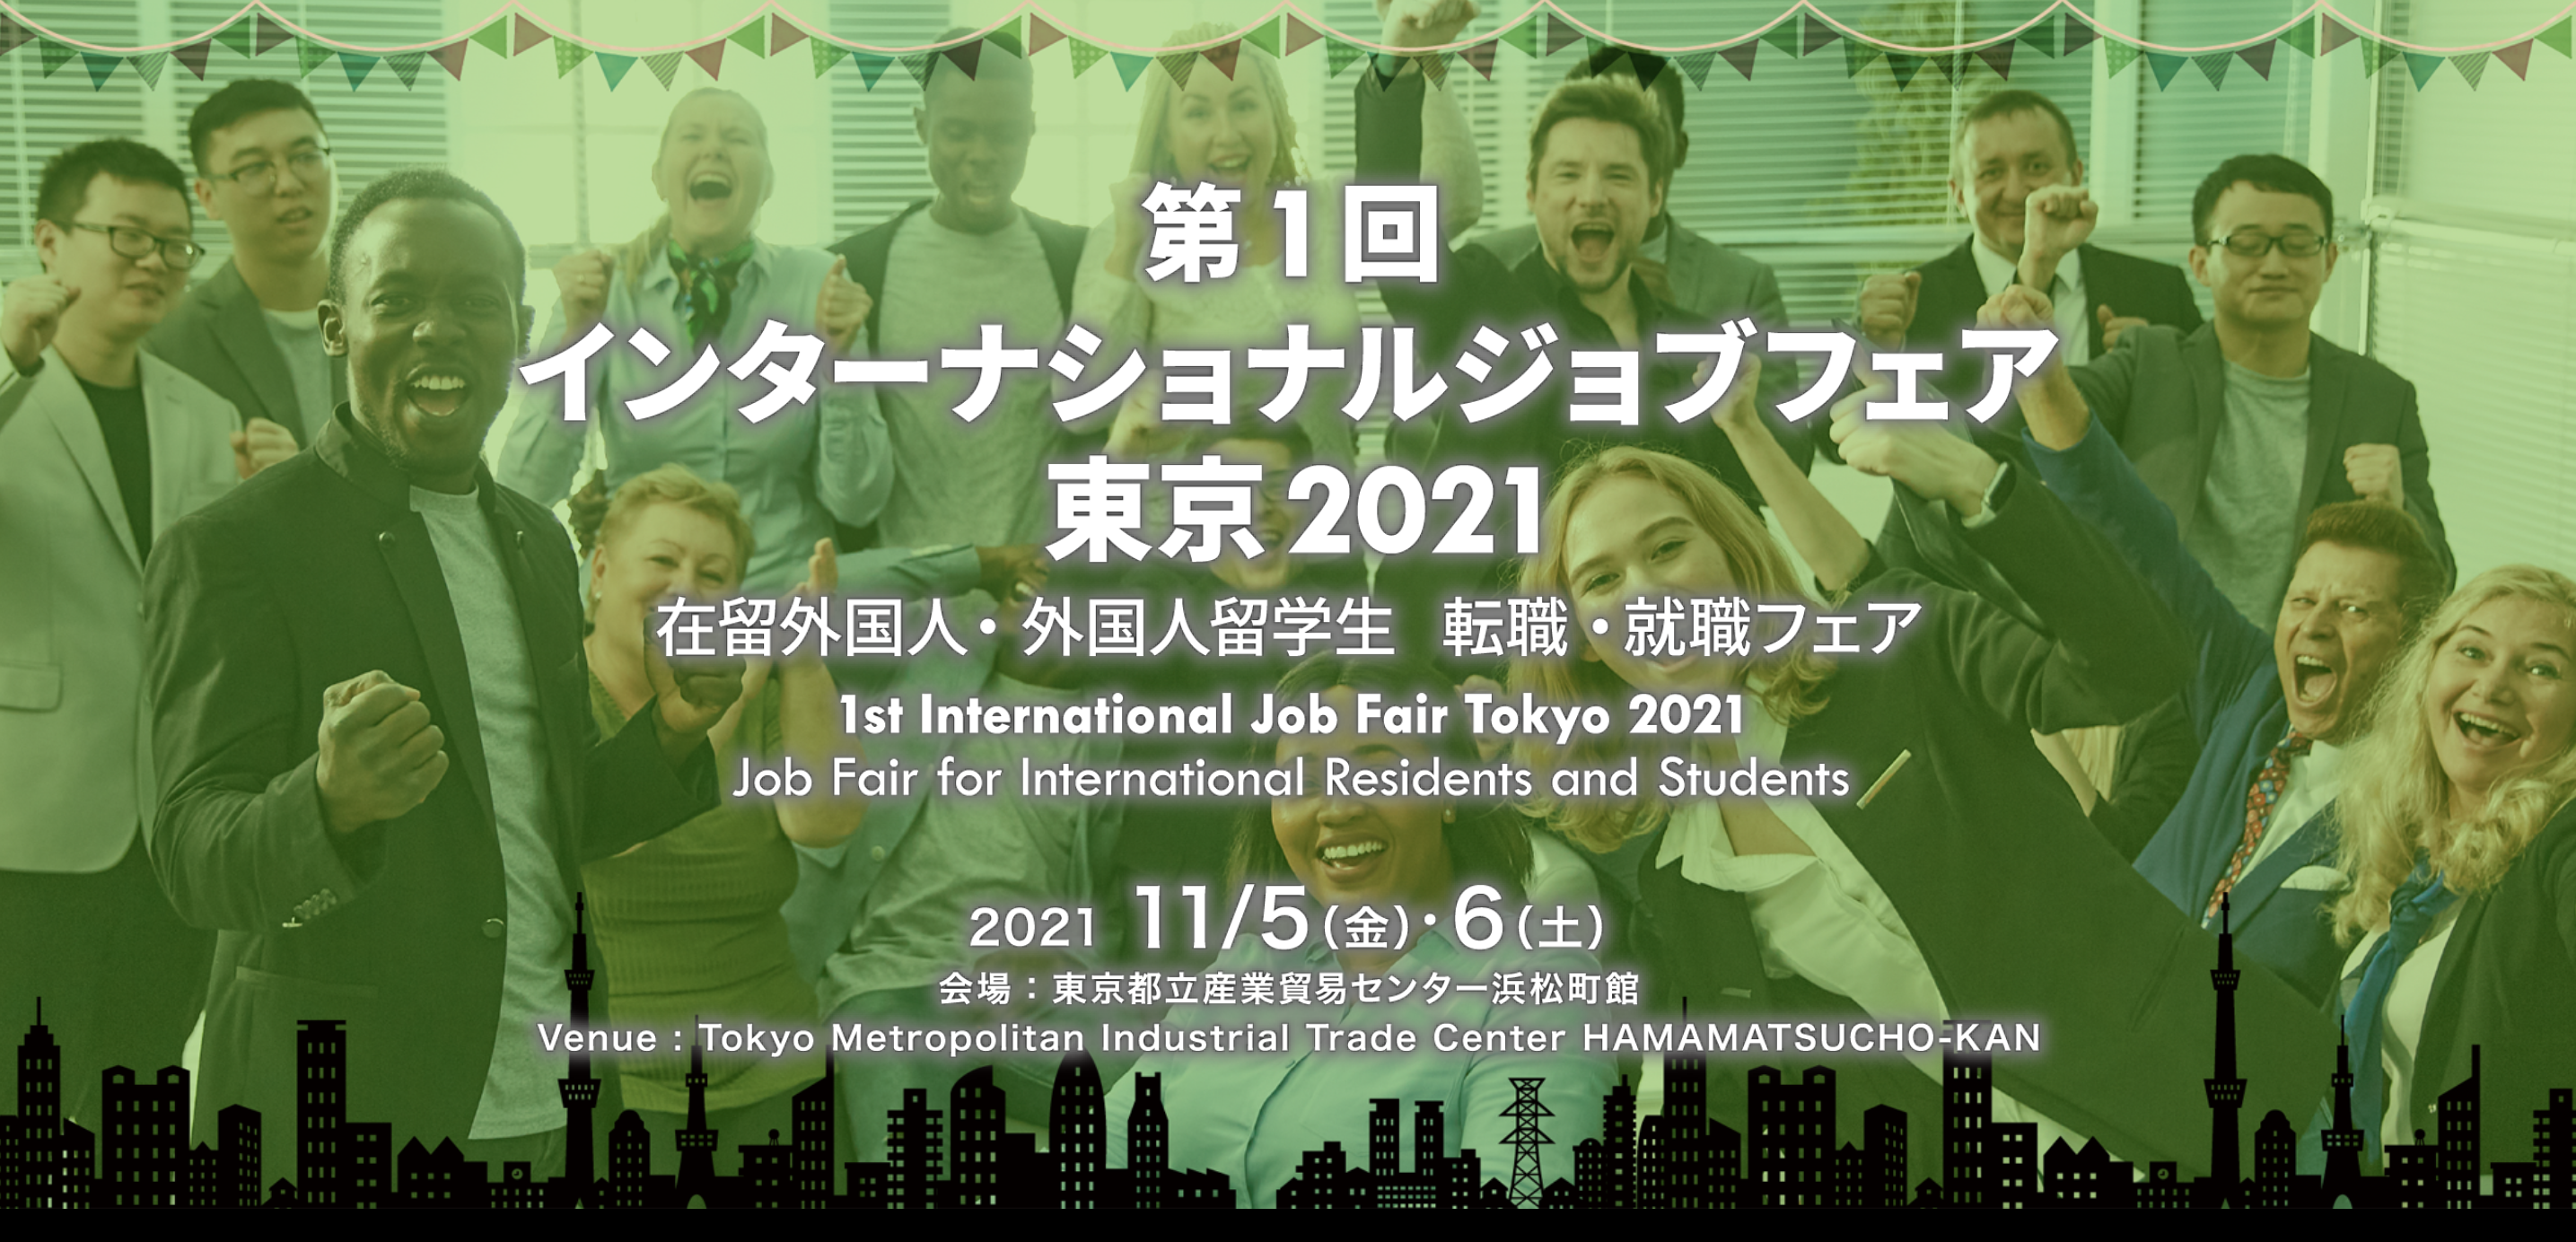 JLEF財団は「第1回インターナショナルジョブフェア東京2021」に出展します。